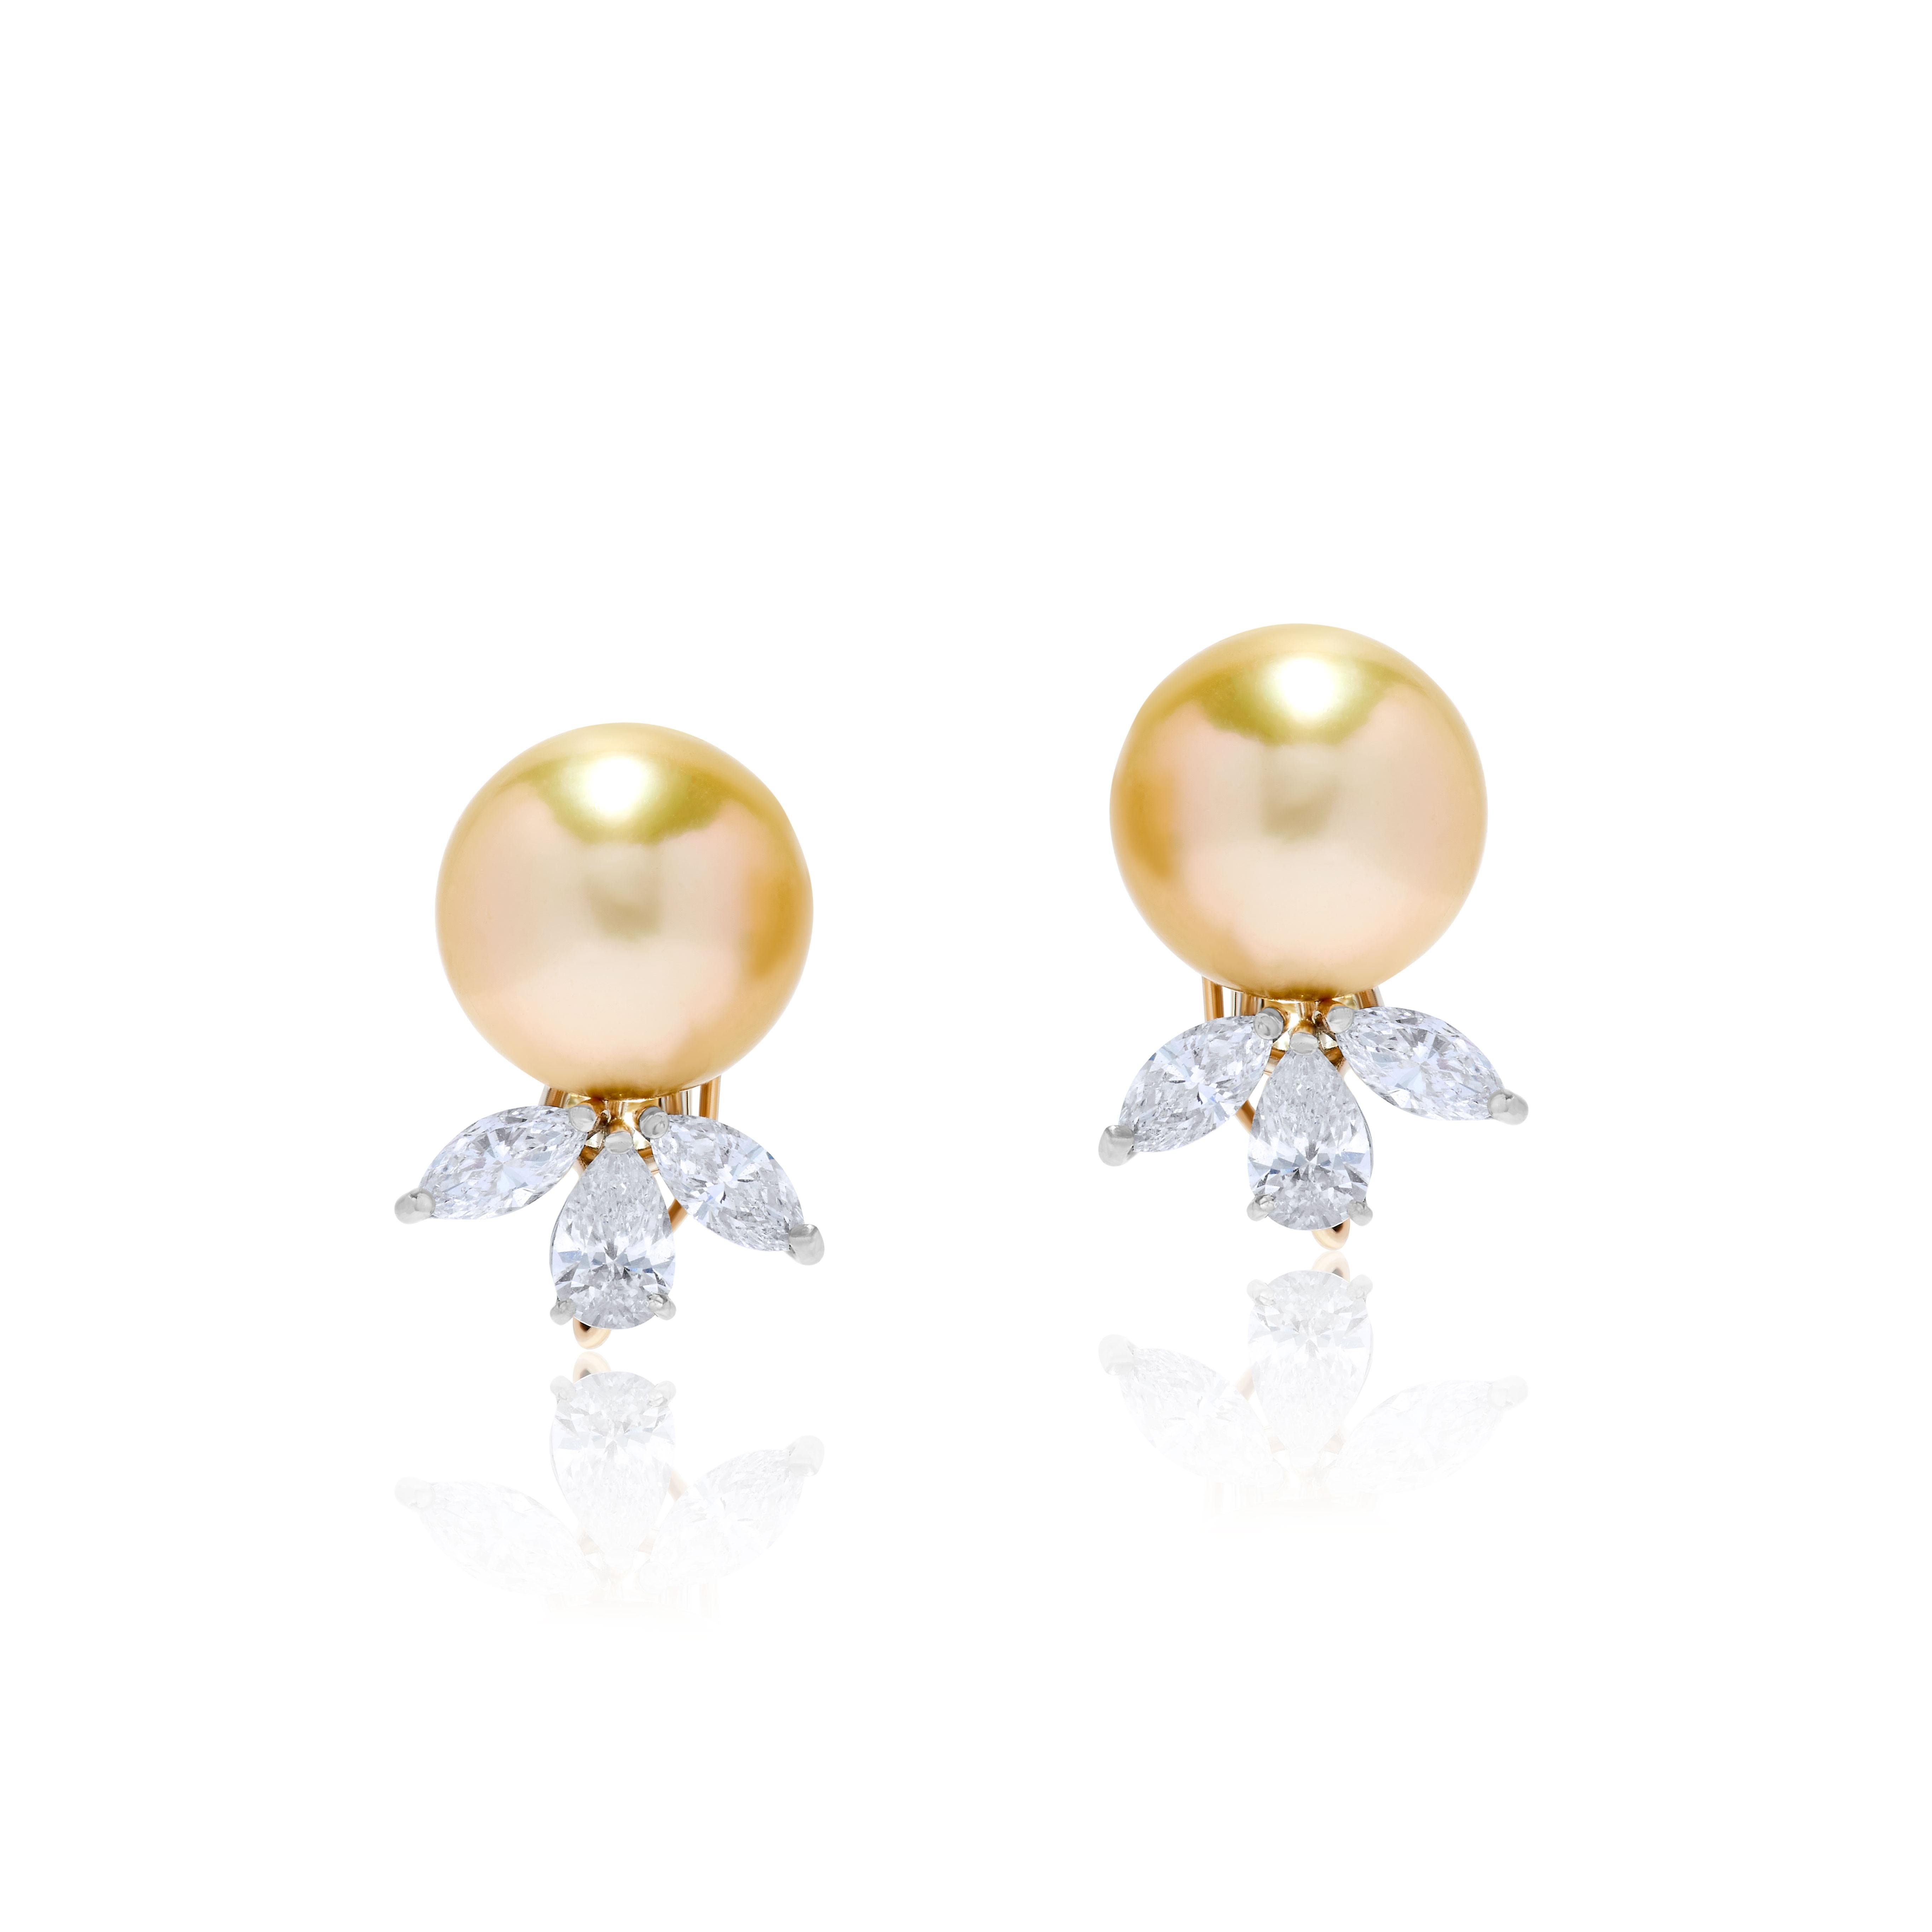 Boucles d'oreilles en or blanc 18 carats avec diamants et perles des mers du Sud Andreoli

Ces boucles d'oreilles présentent les caractéristiques suivantes :
- Diamant de 1,93 carat
- 10.00 Gramme Perle des mers du Sud (12.4 x 12.2)
- 2,93 grammes